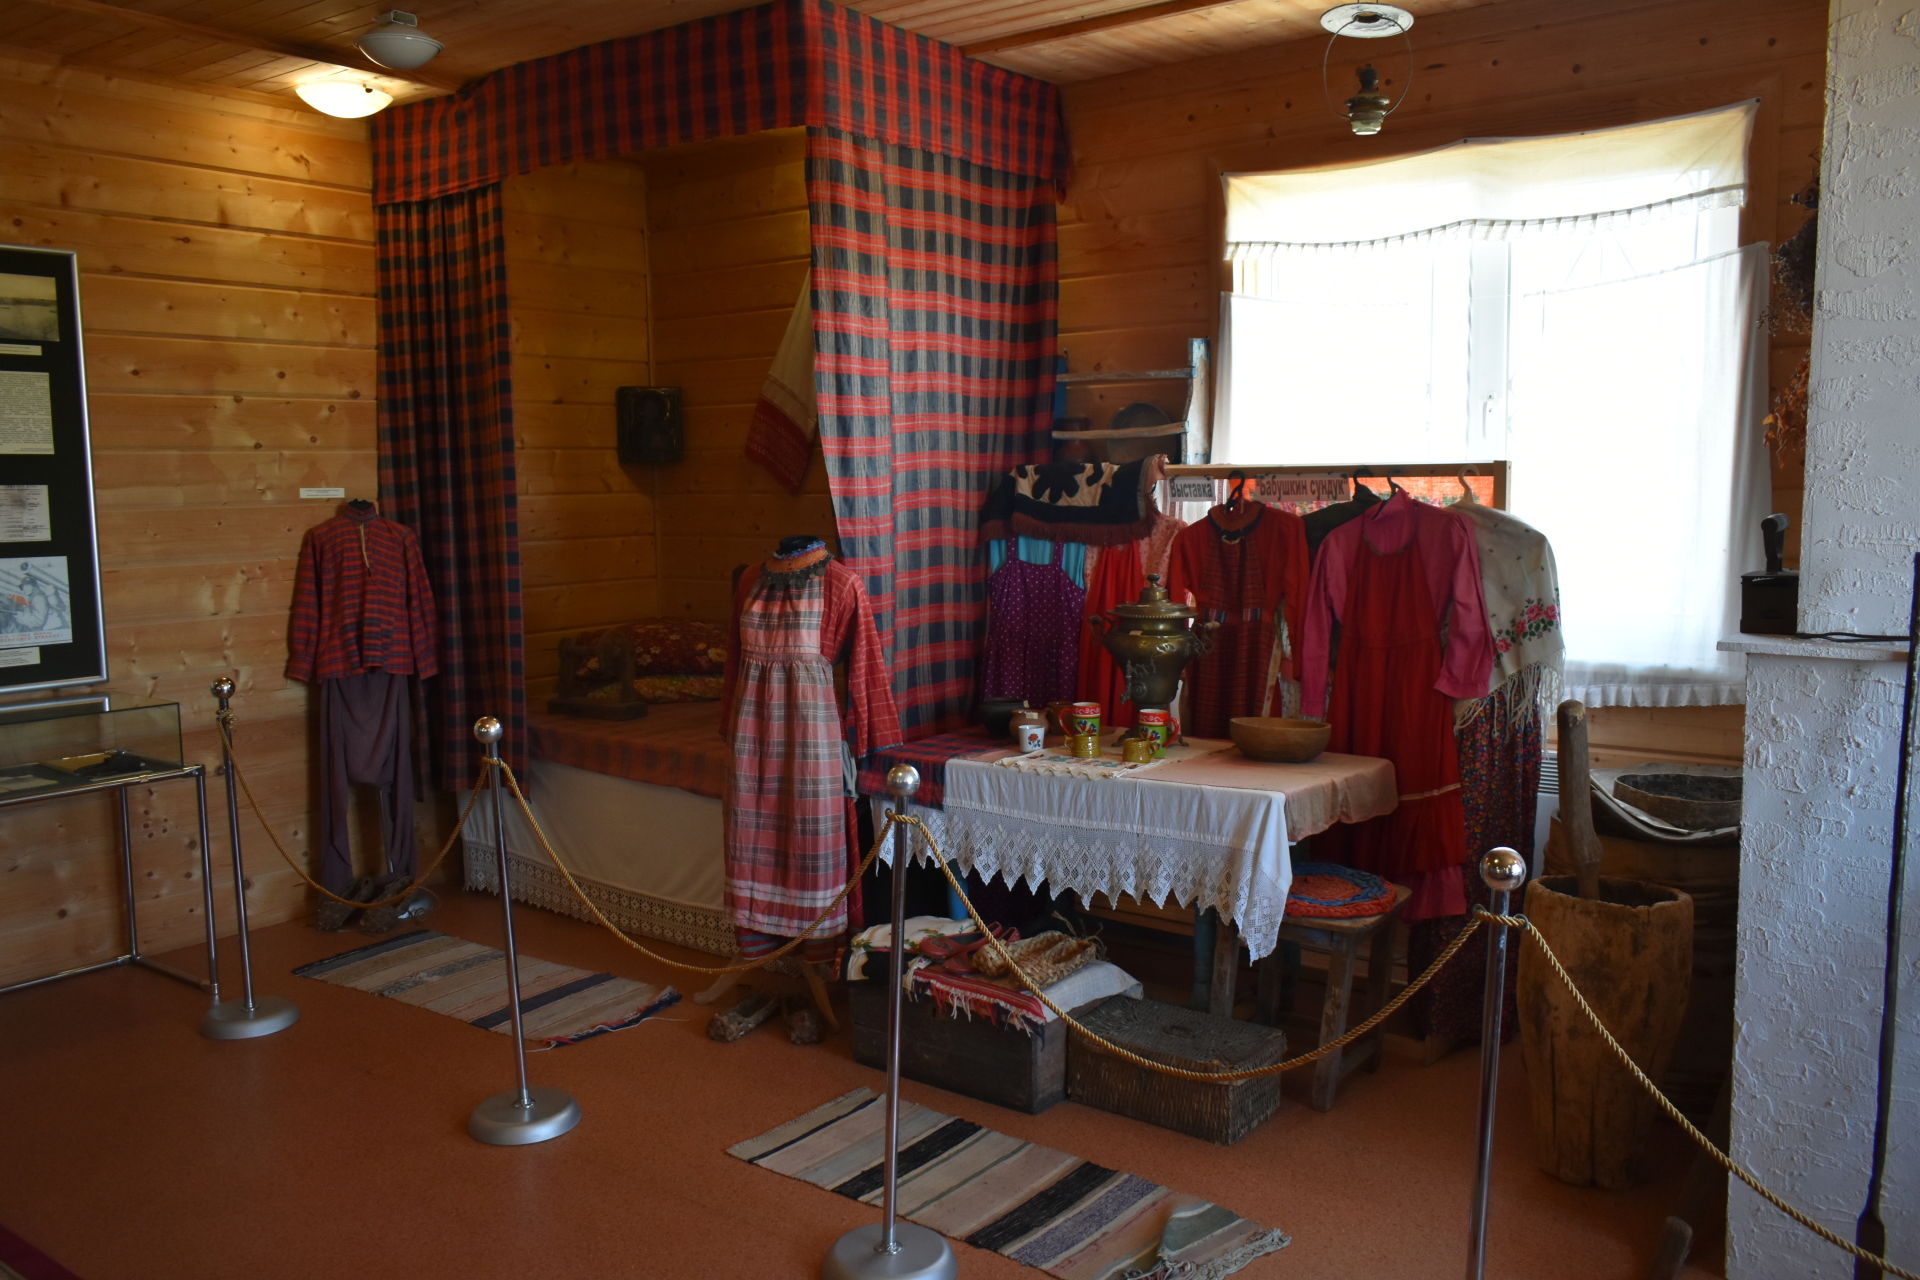 В музее села Альвидино сегодня проводятся групповые экскурсии